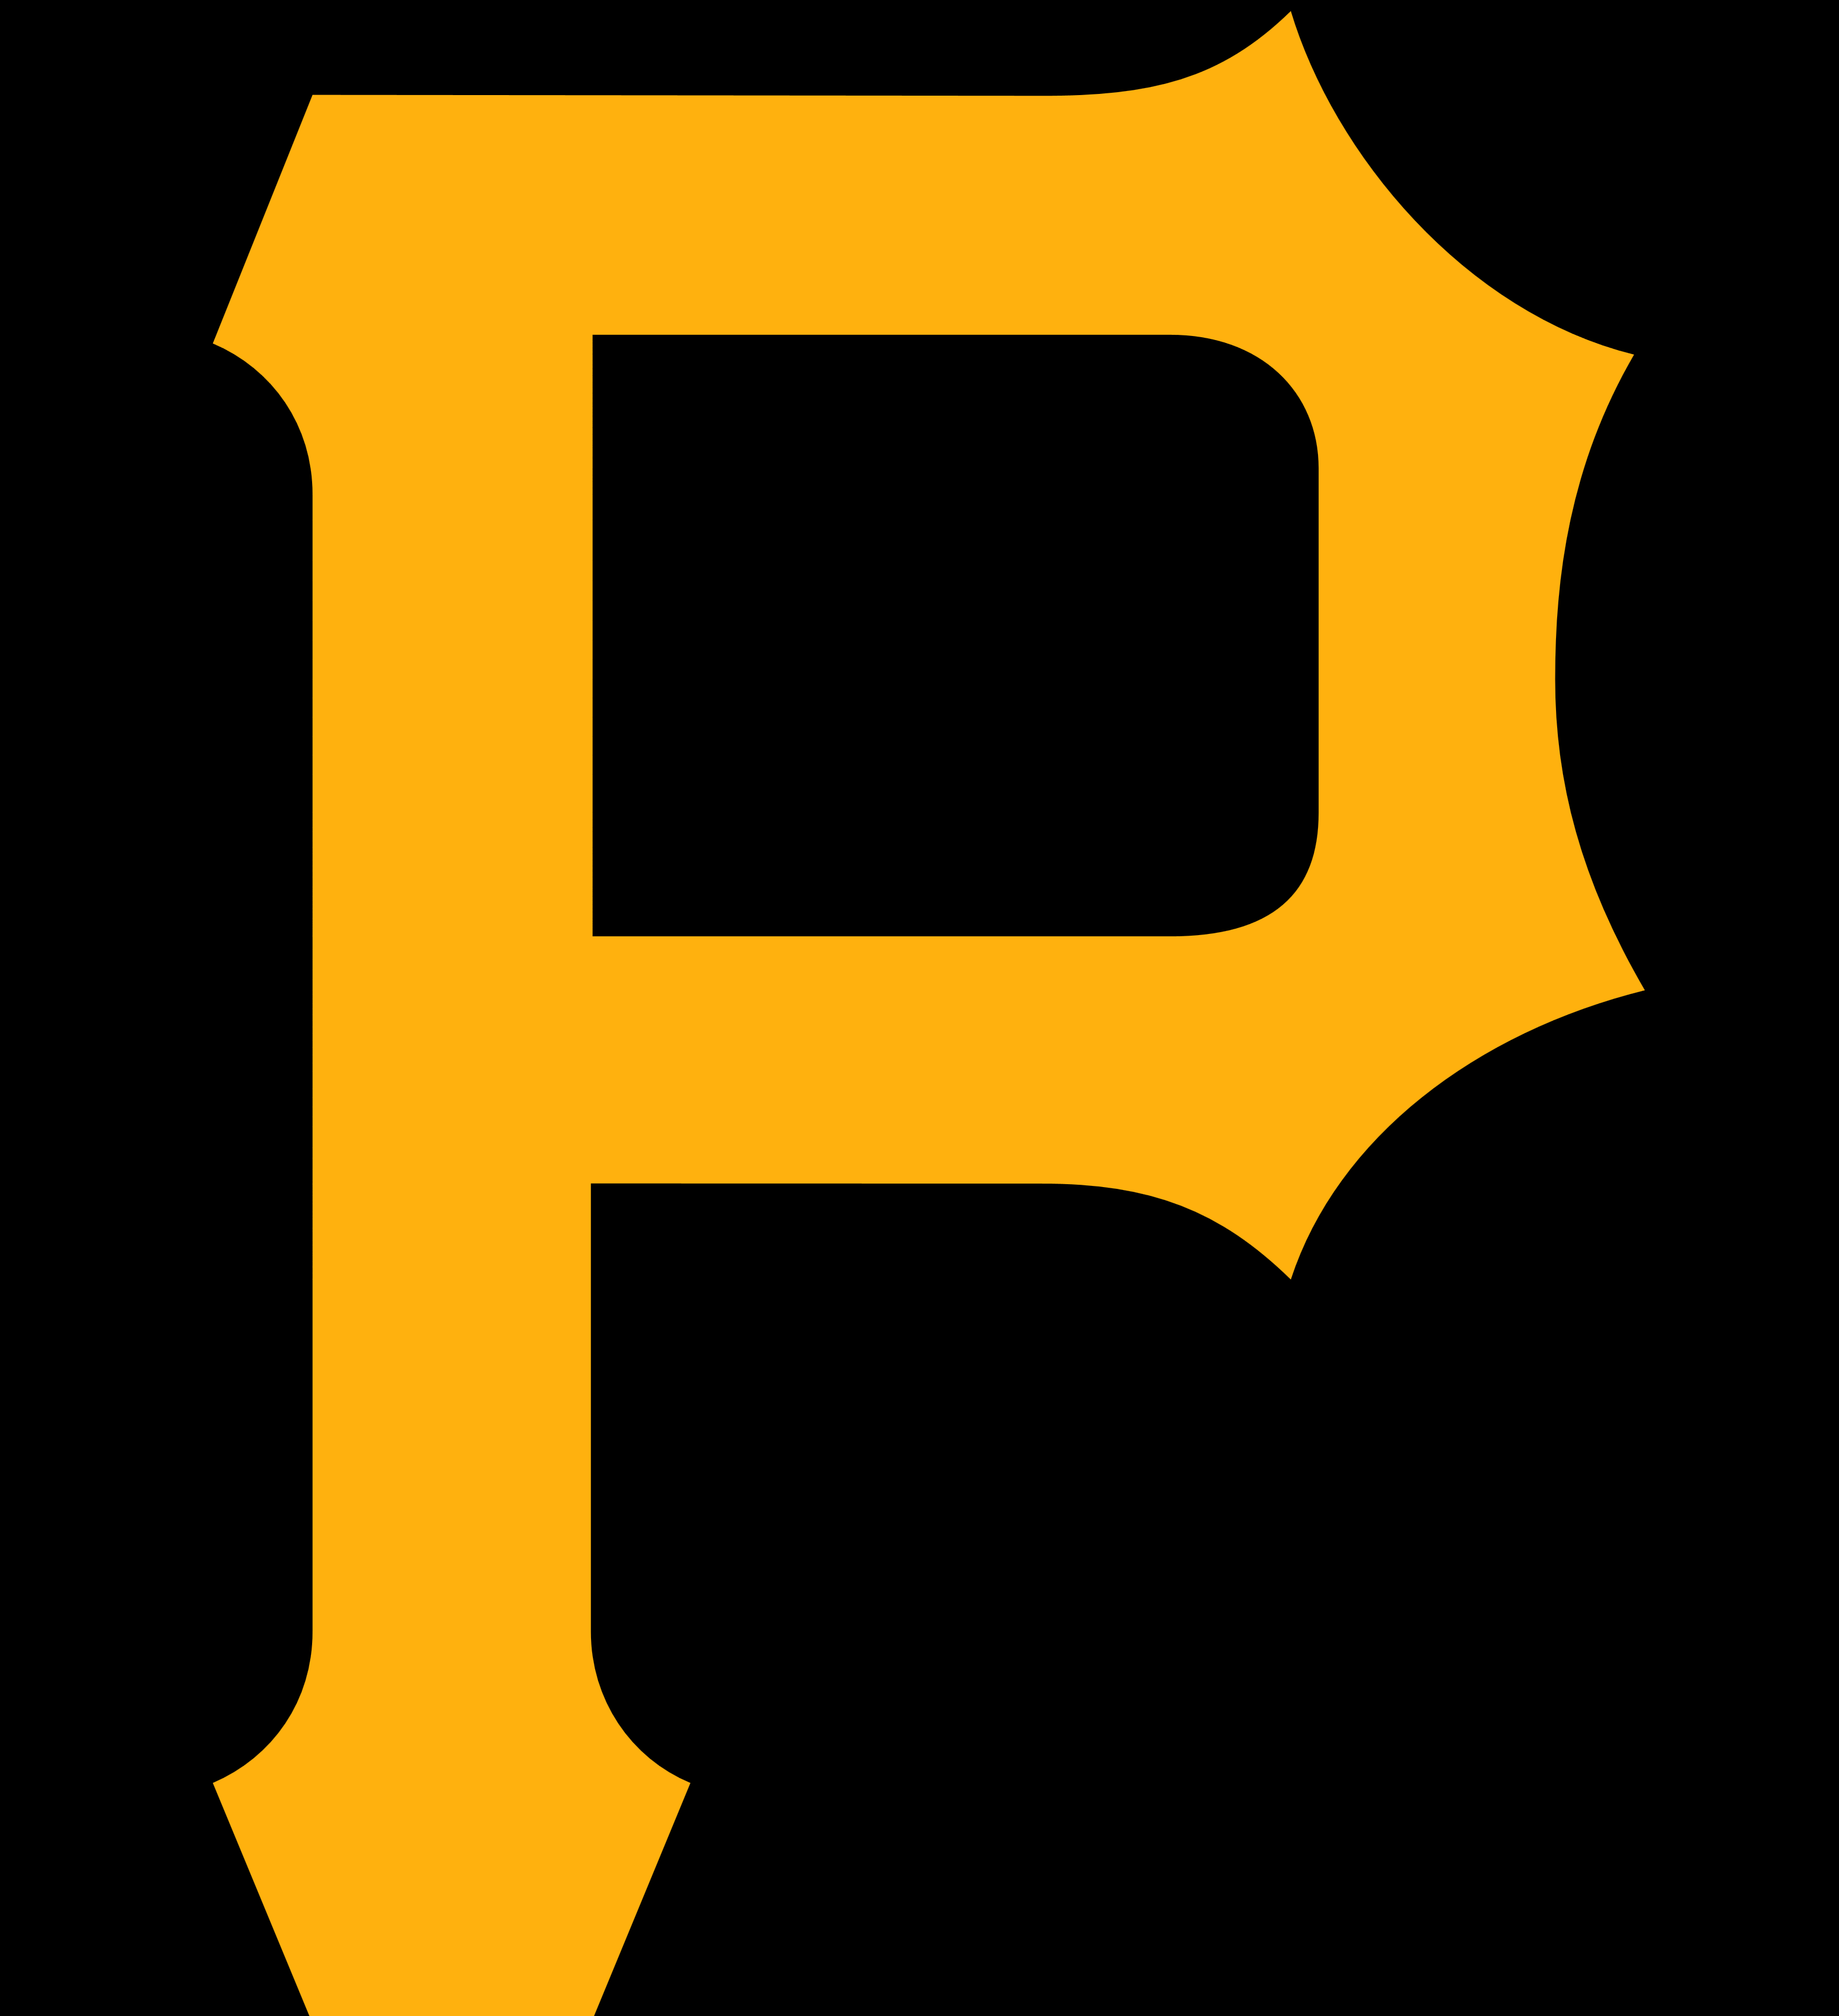 Download Pittsburgh Pirates - Logos Download